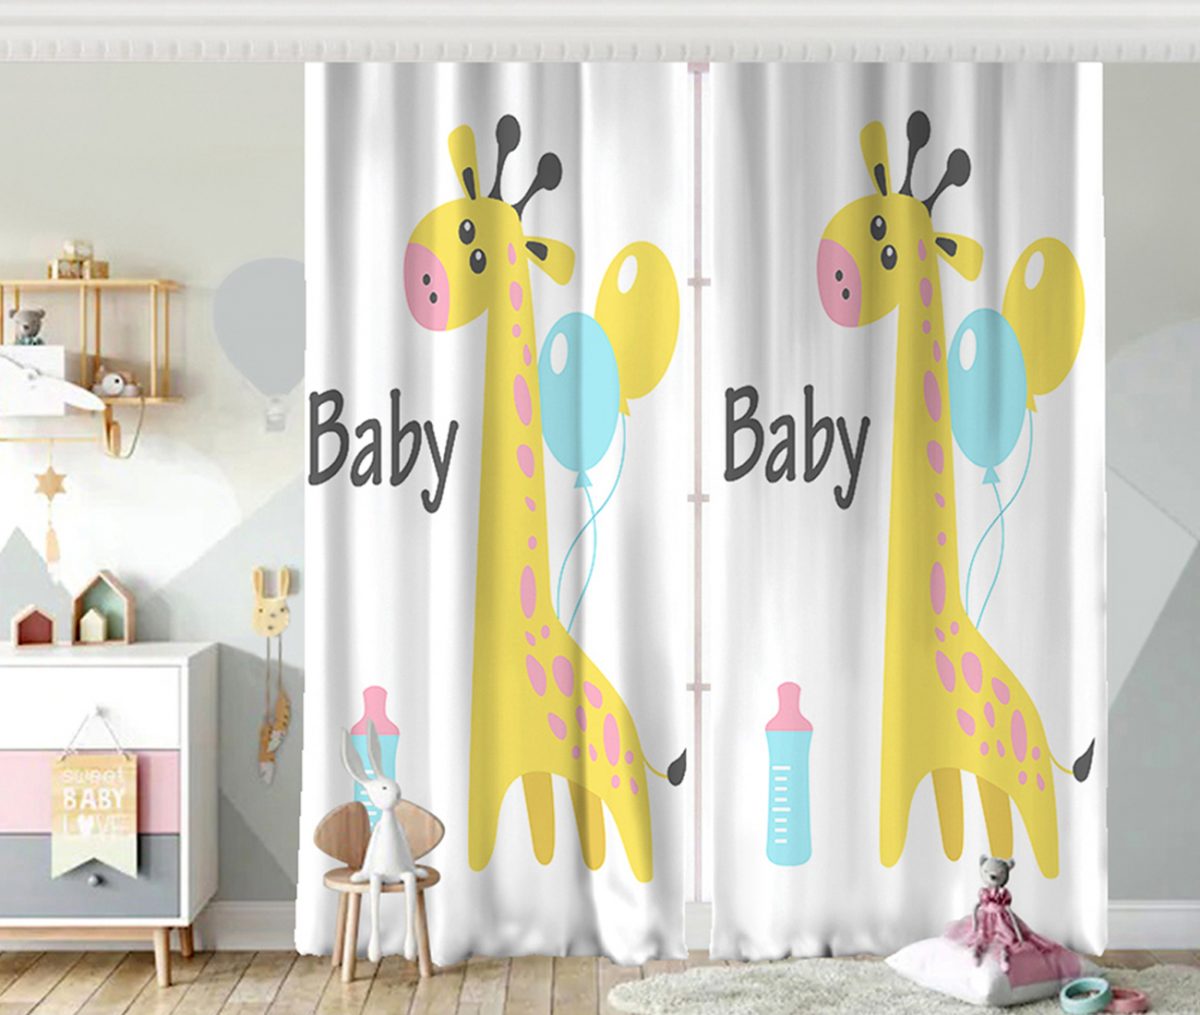 Balon ve Zürafa Desenli Özel Tasarım Bebek Odası Fon Perde Realhomes